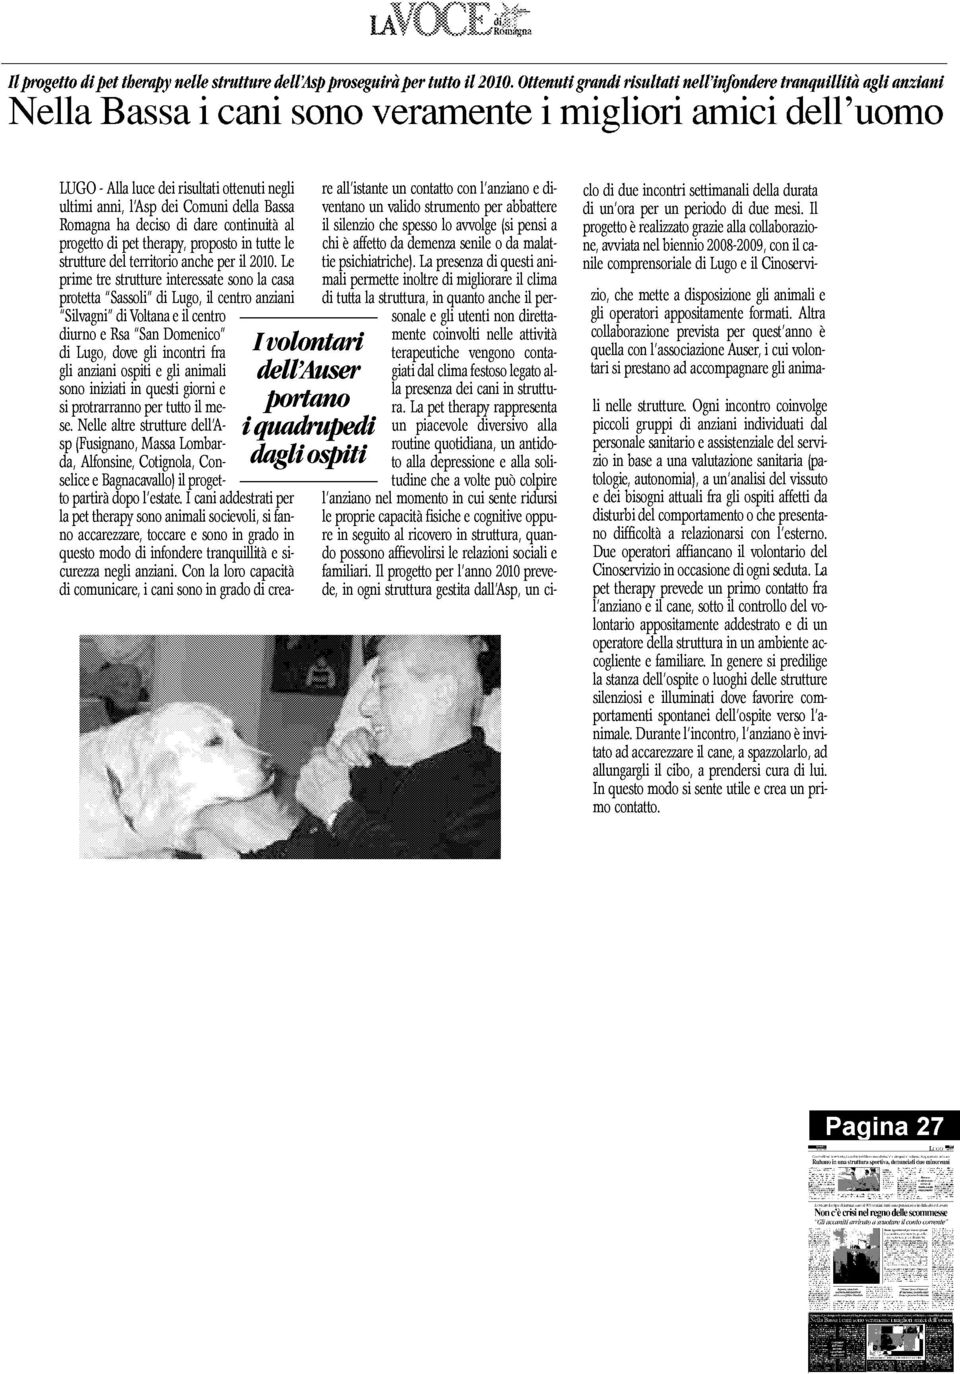 Comuni della Bass a Romagna ha deciso di dare continuità a l progetto di pet therapy, proposto in tutte le strutture del territorio anche per il 2010.